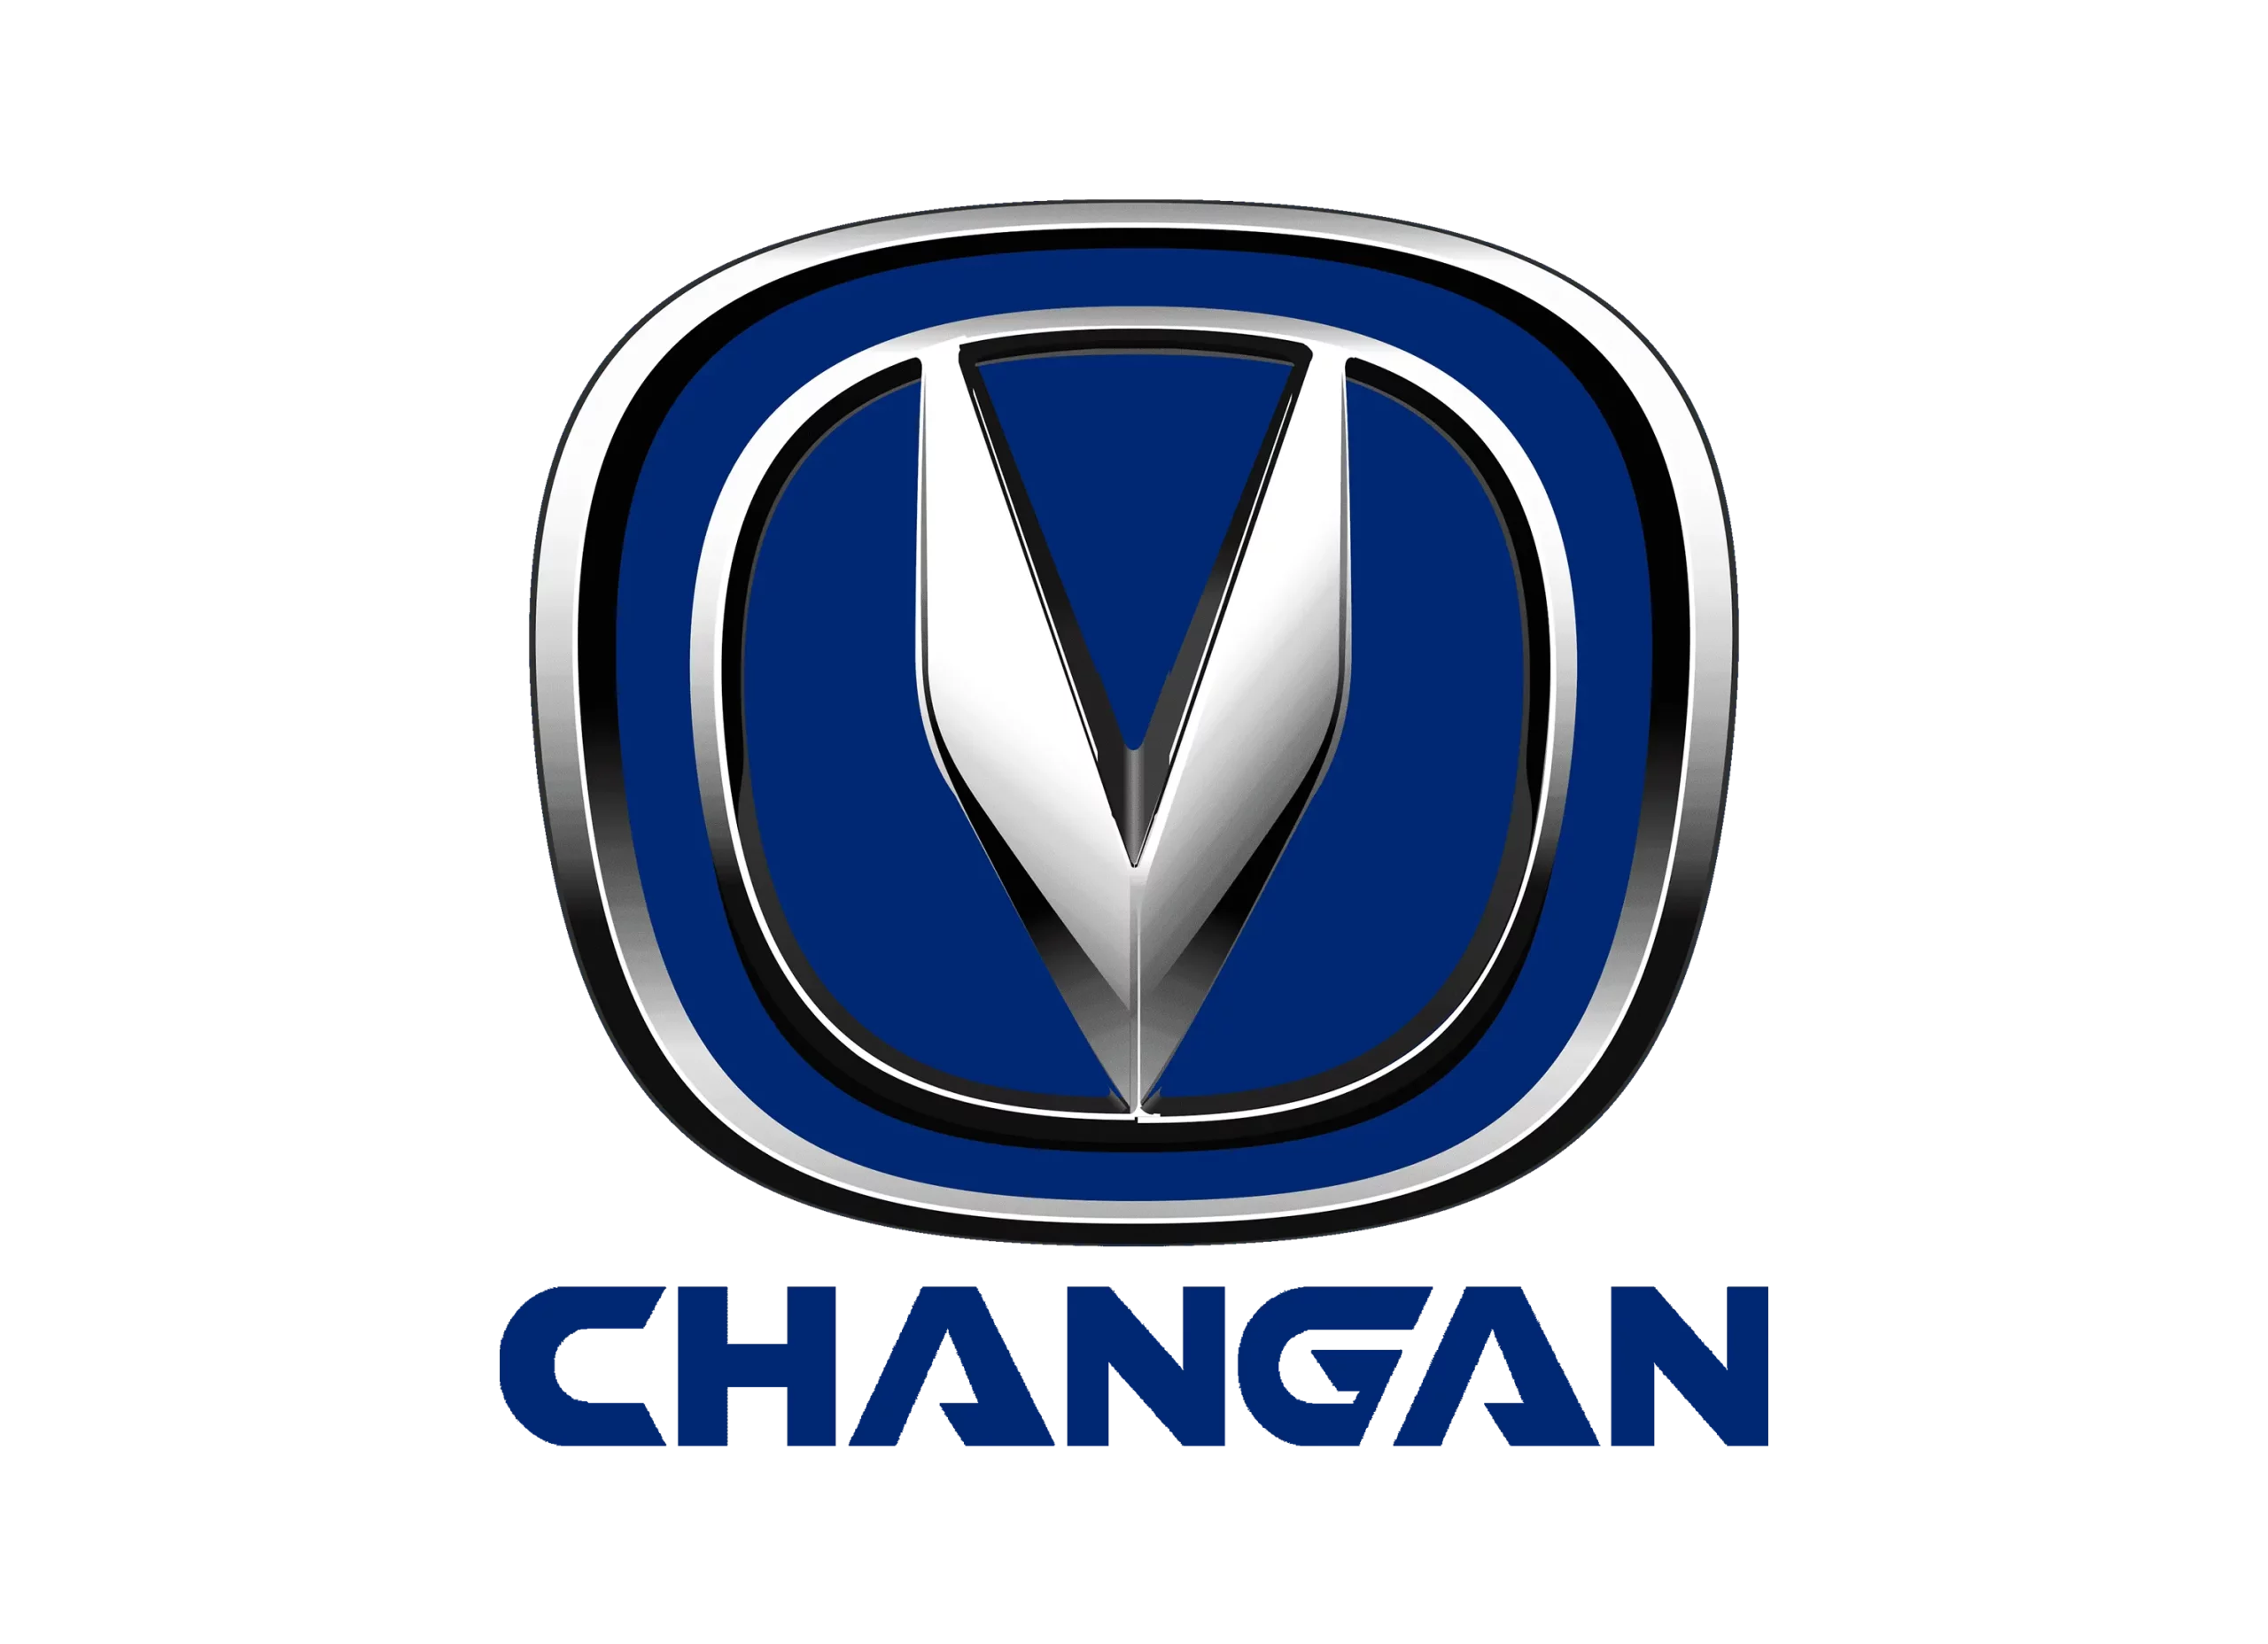 Changan logo